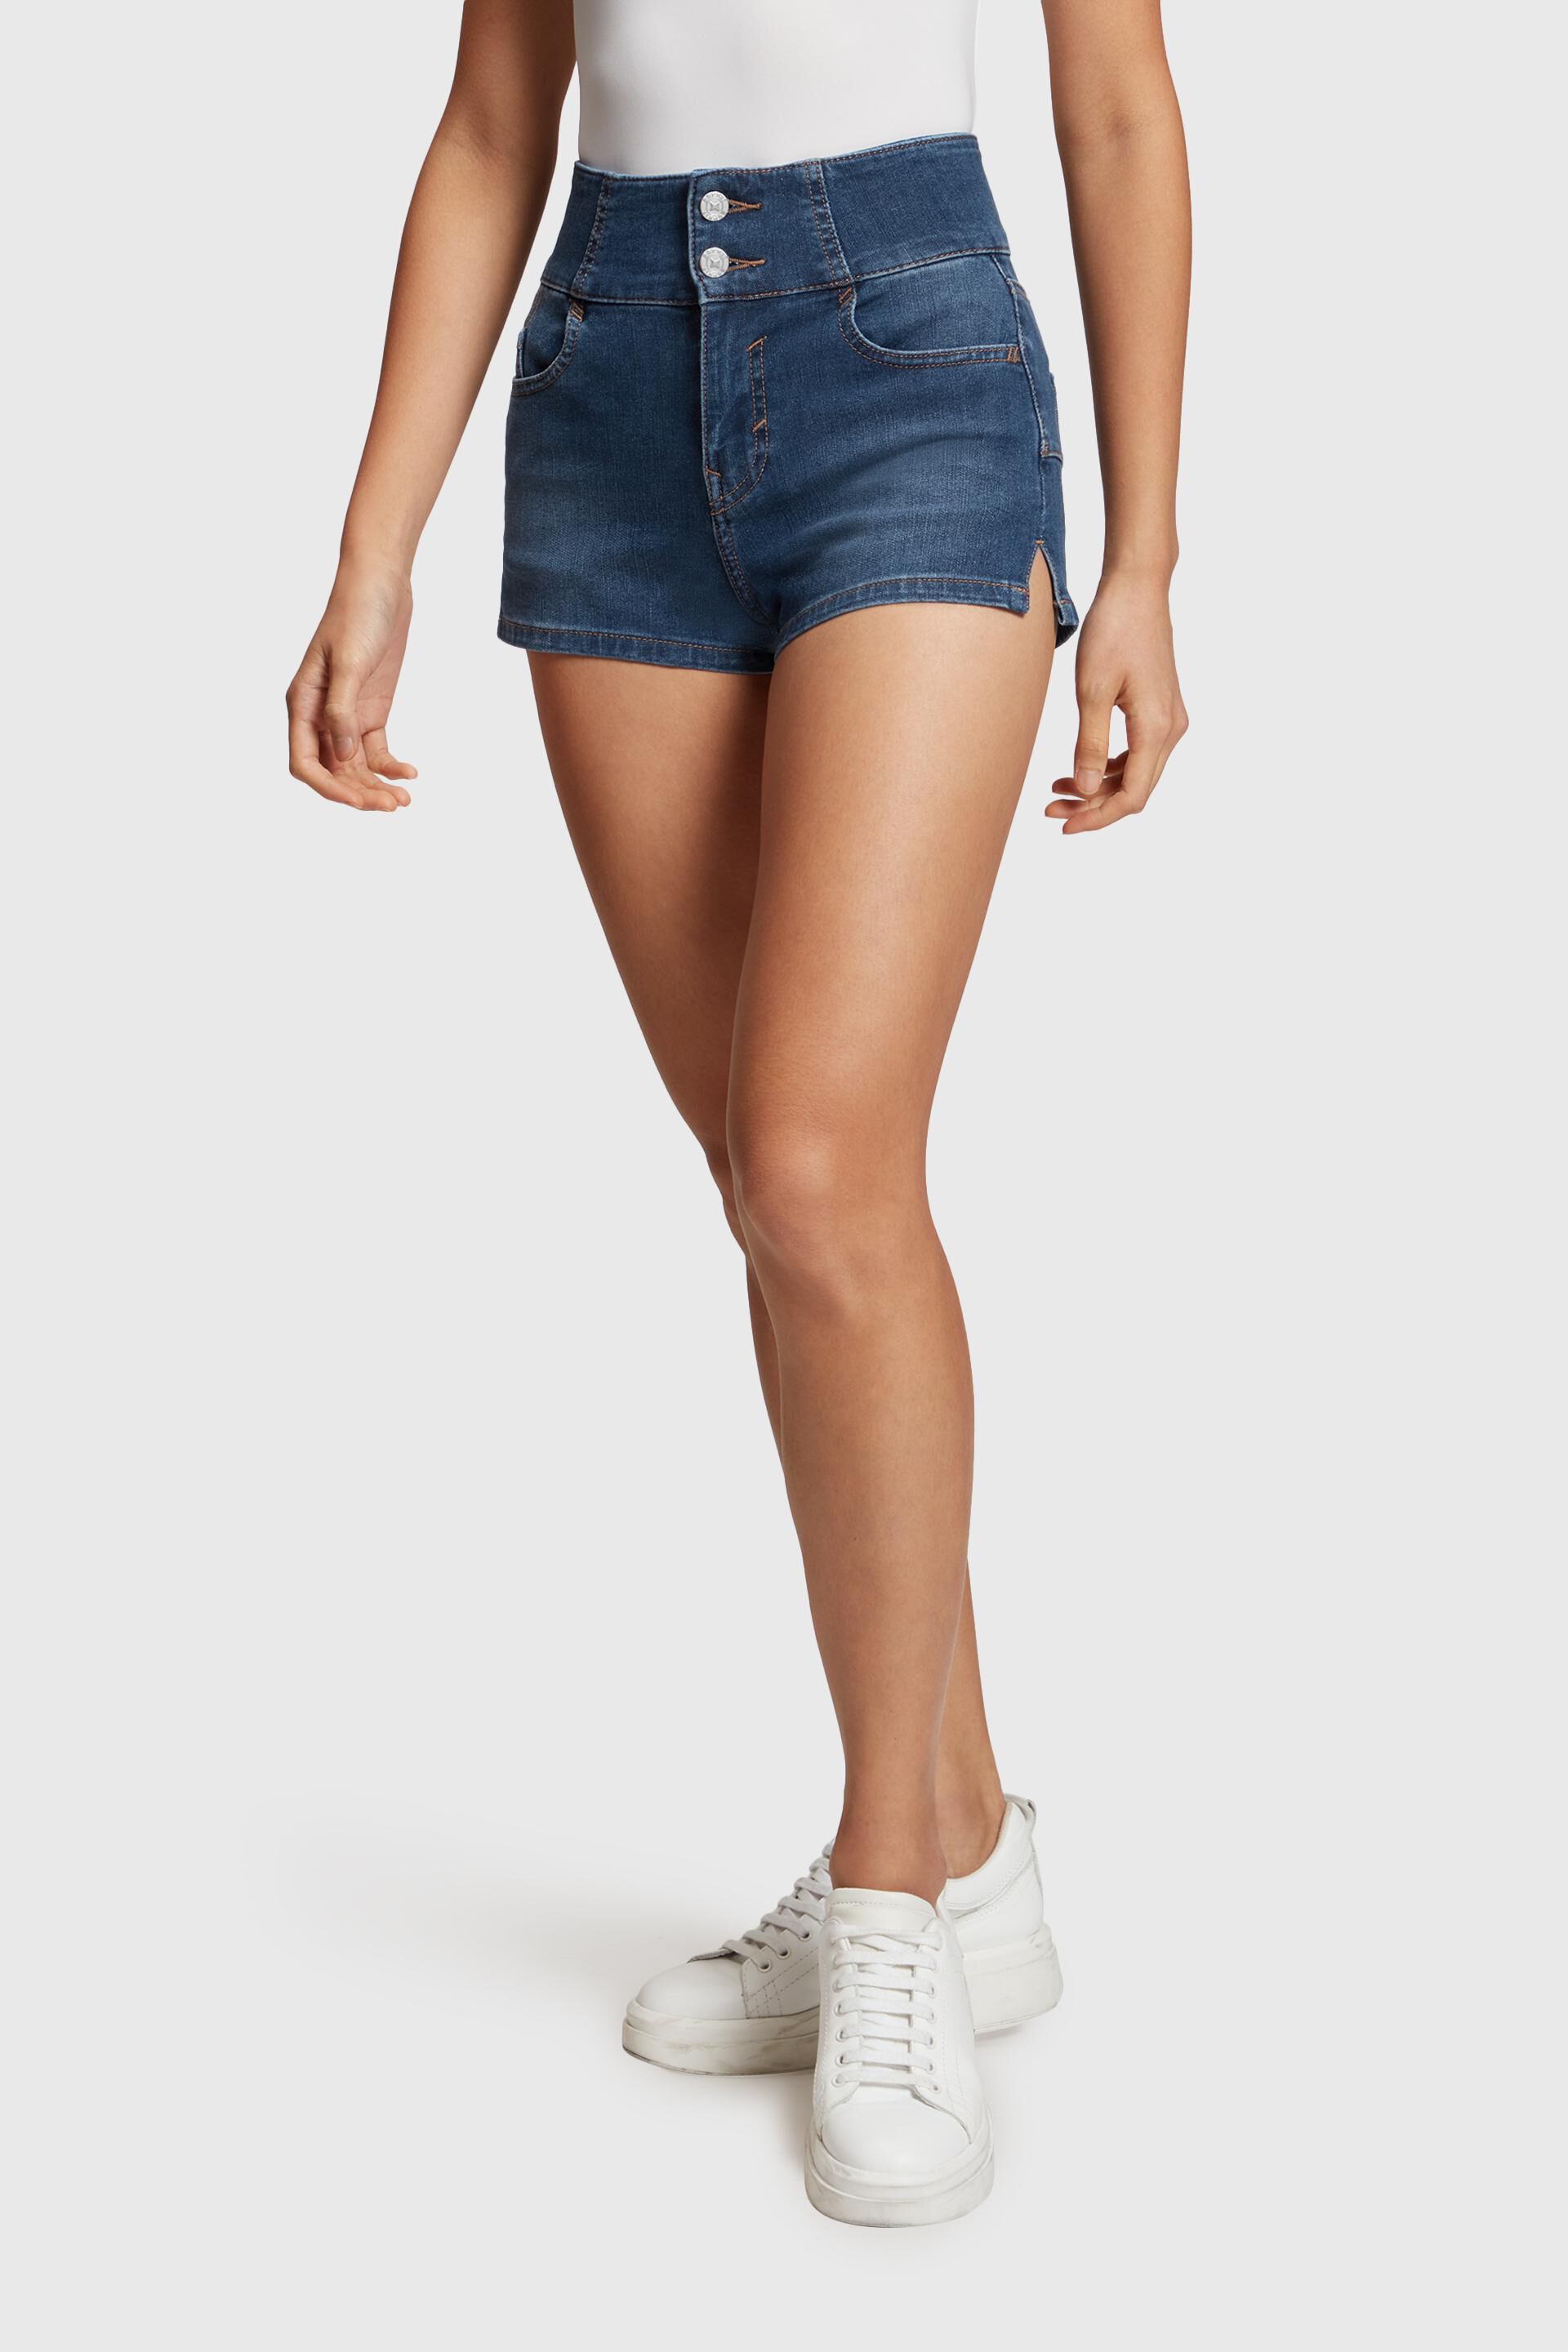 Esprit B8141 Ondergoed Voor in het Wit Dames Kleding voor voor Shorts voor Jeans en denim shorts 